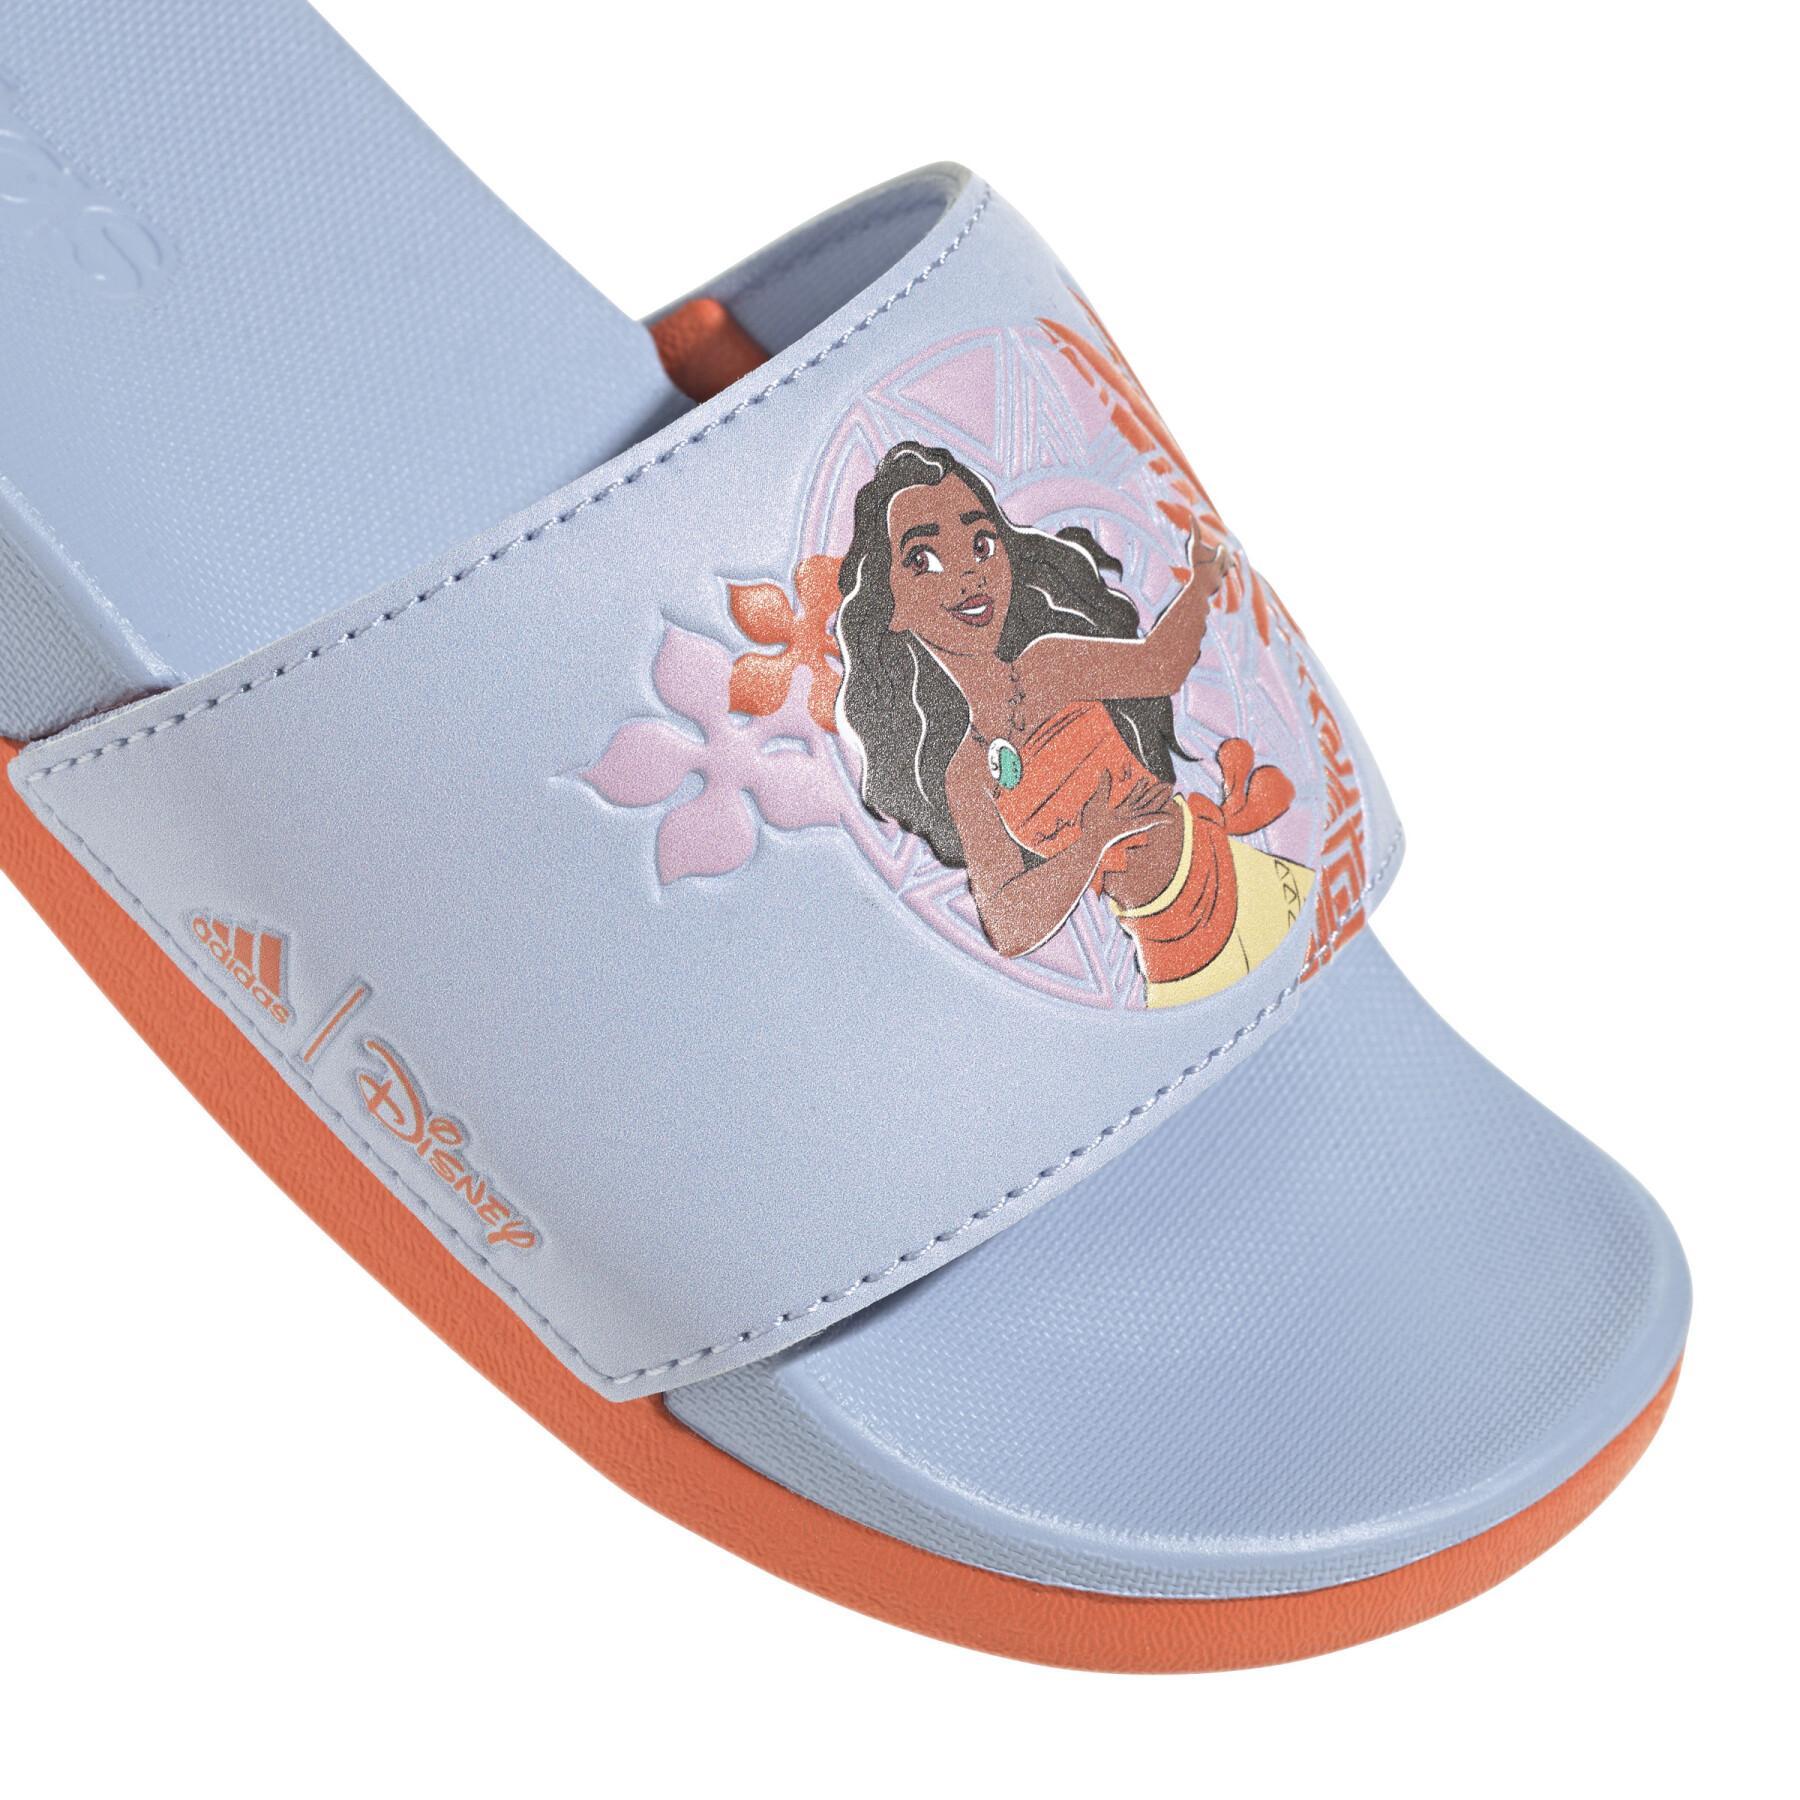 Slides für Kinder adidas X Disney Adilette Comfort Moana